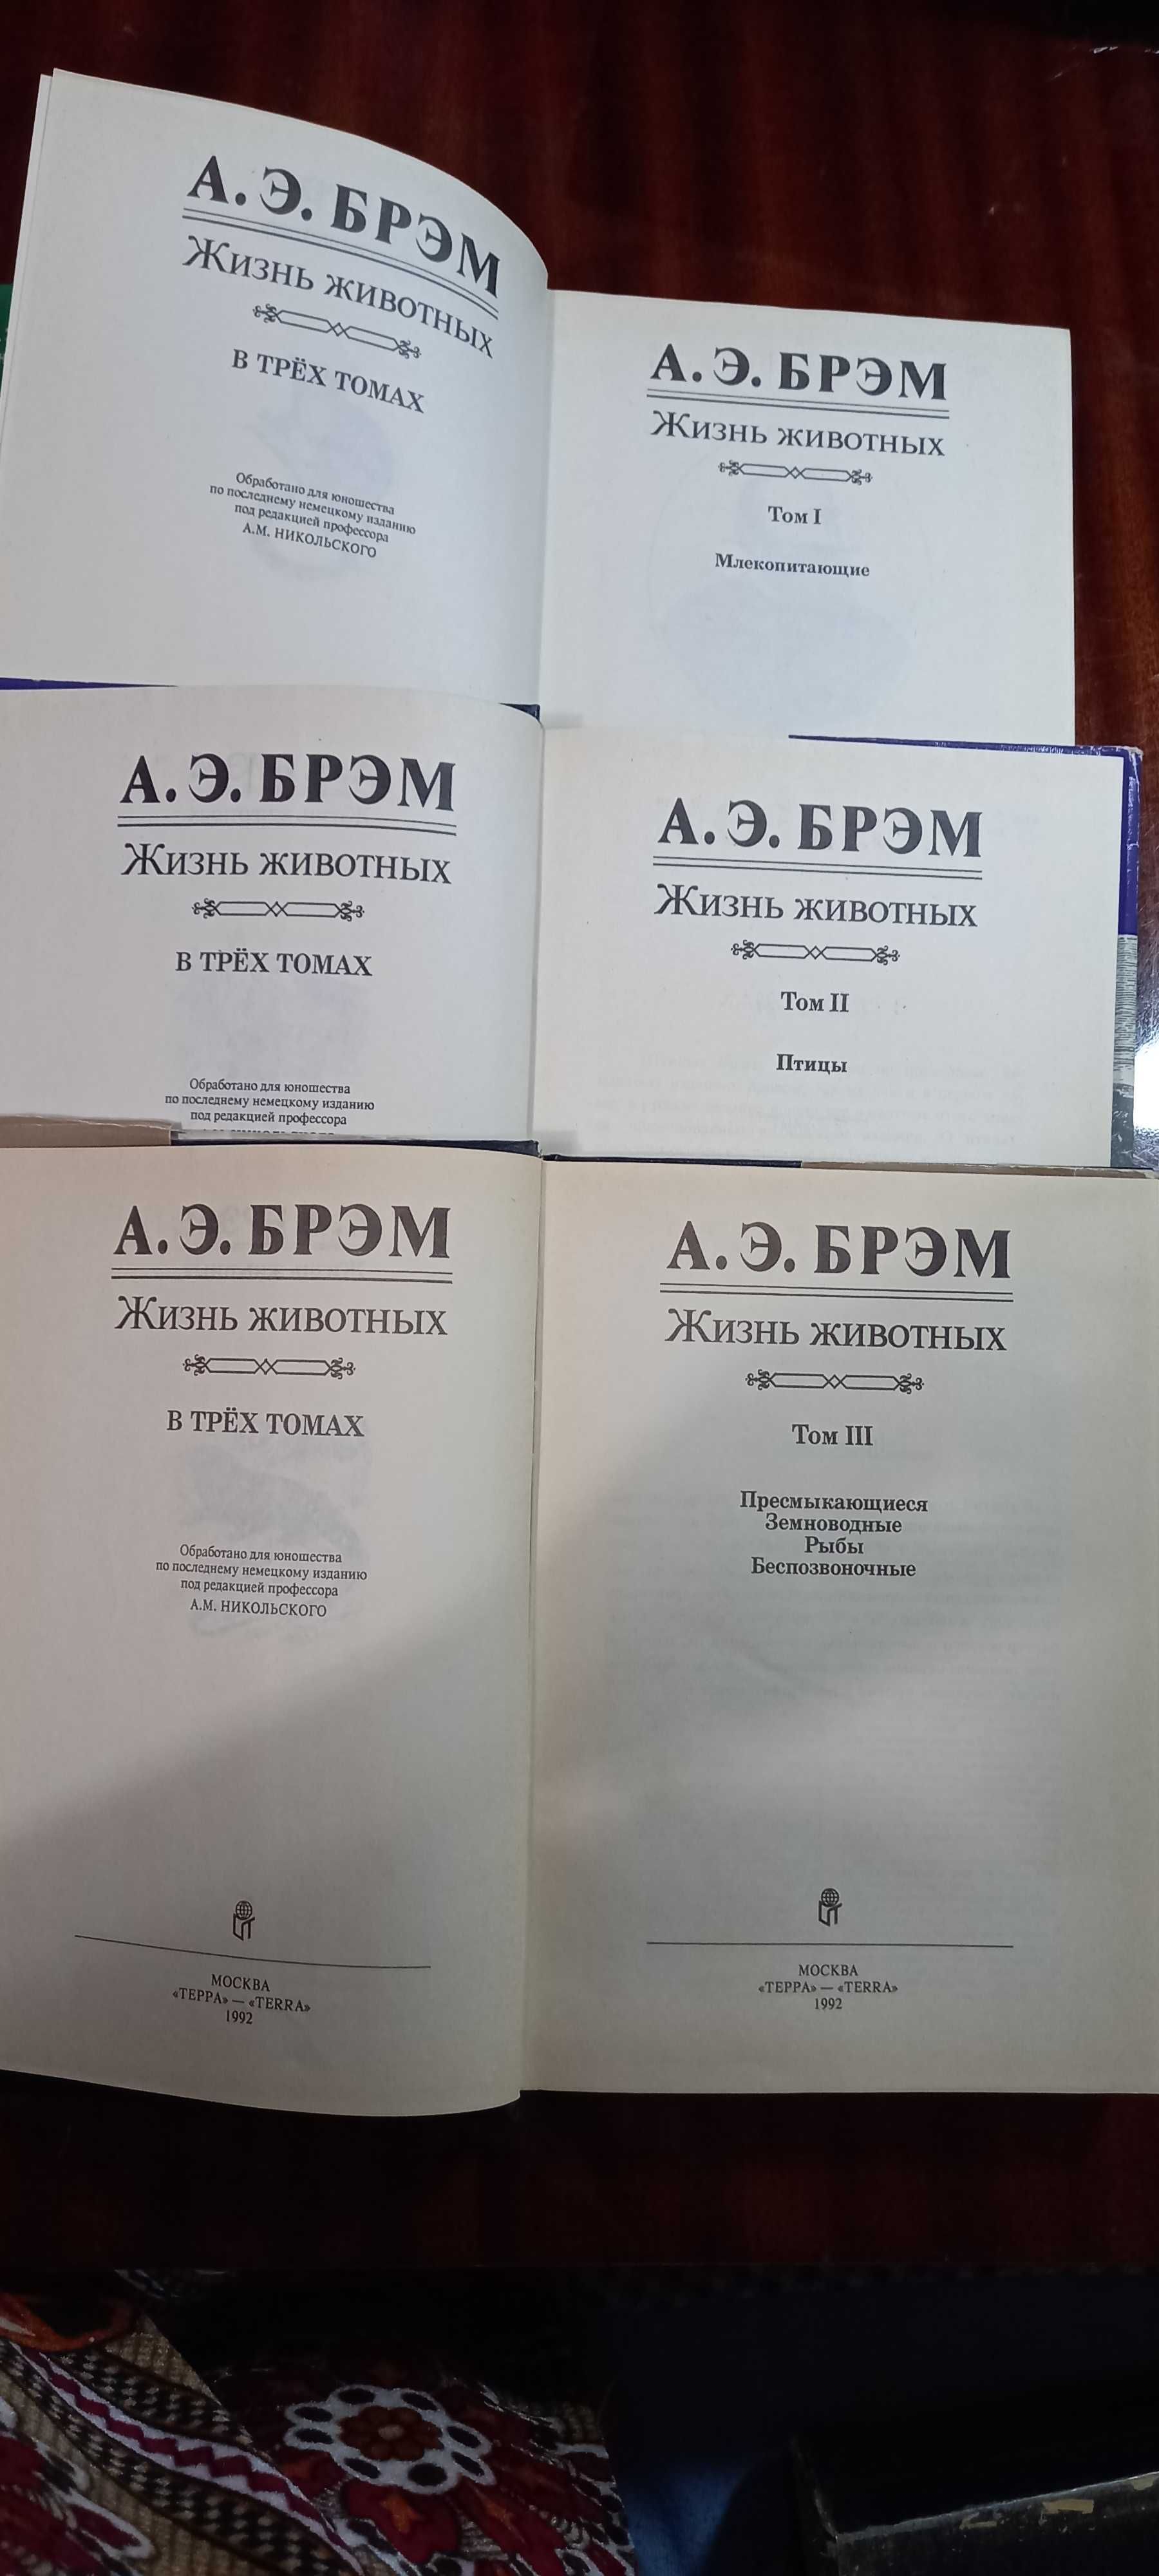 Серия книг "Мир животных" А.Э.Брэм.  Полный комплект 3 тома